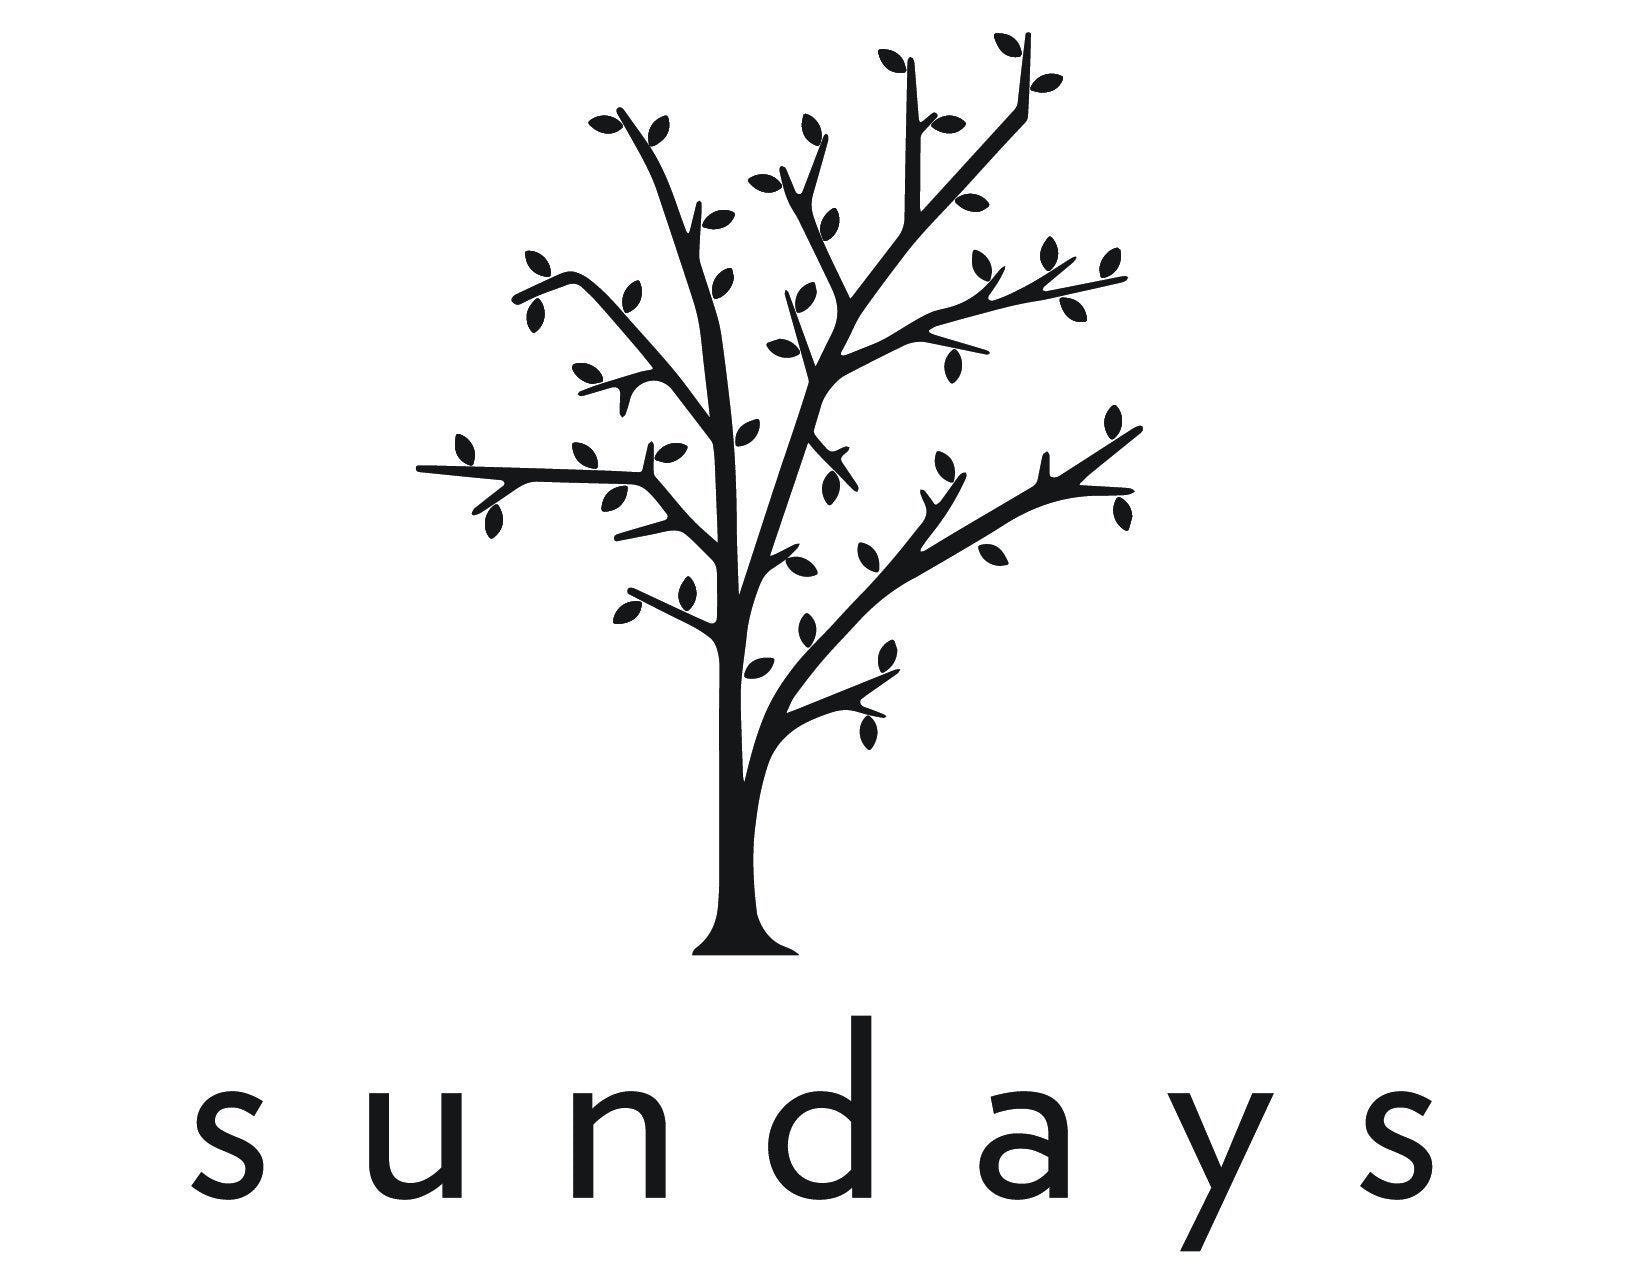 LYRA PANTS – We Are Sundays